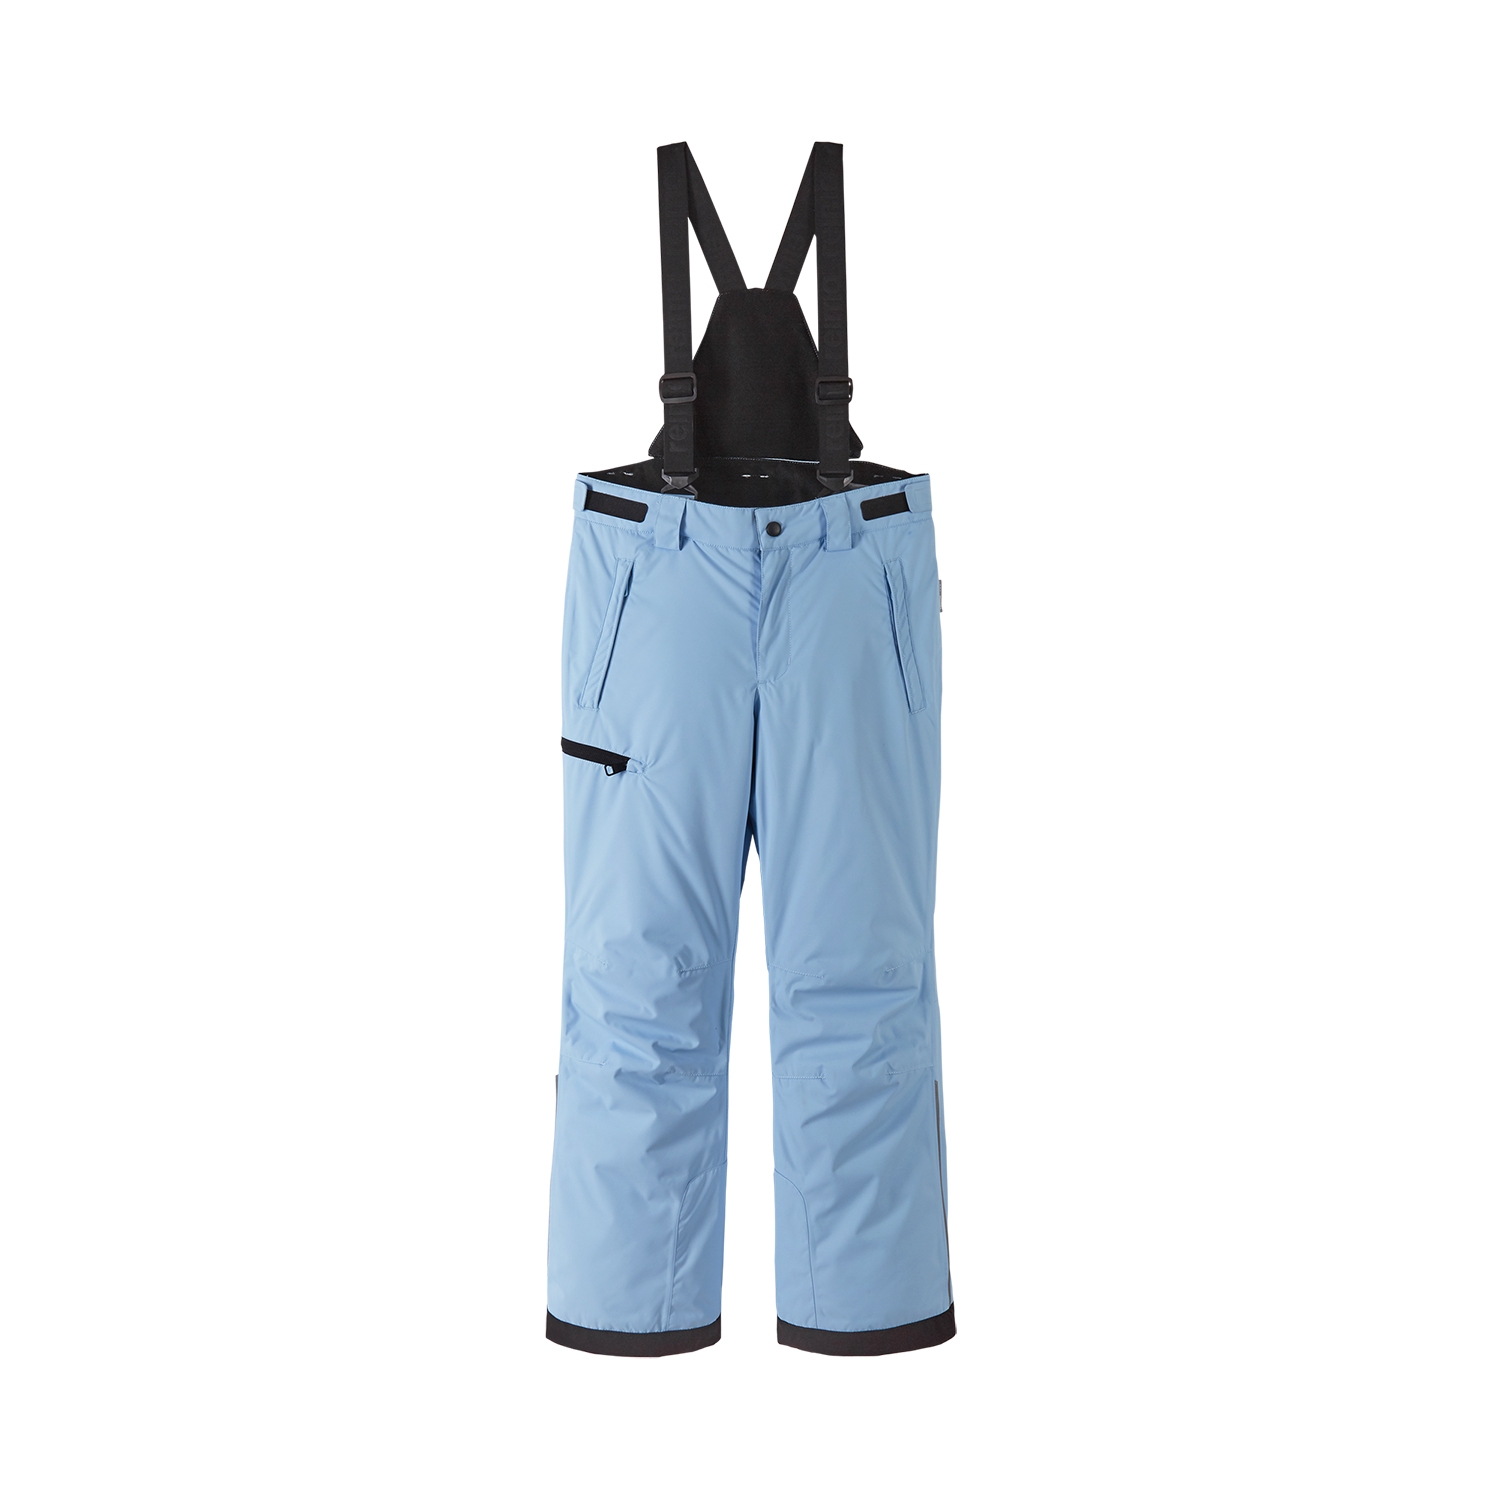 Spodnie narciarskie dla dziecka Reima Terrie frozen blue - 140